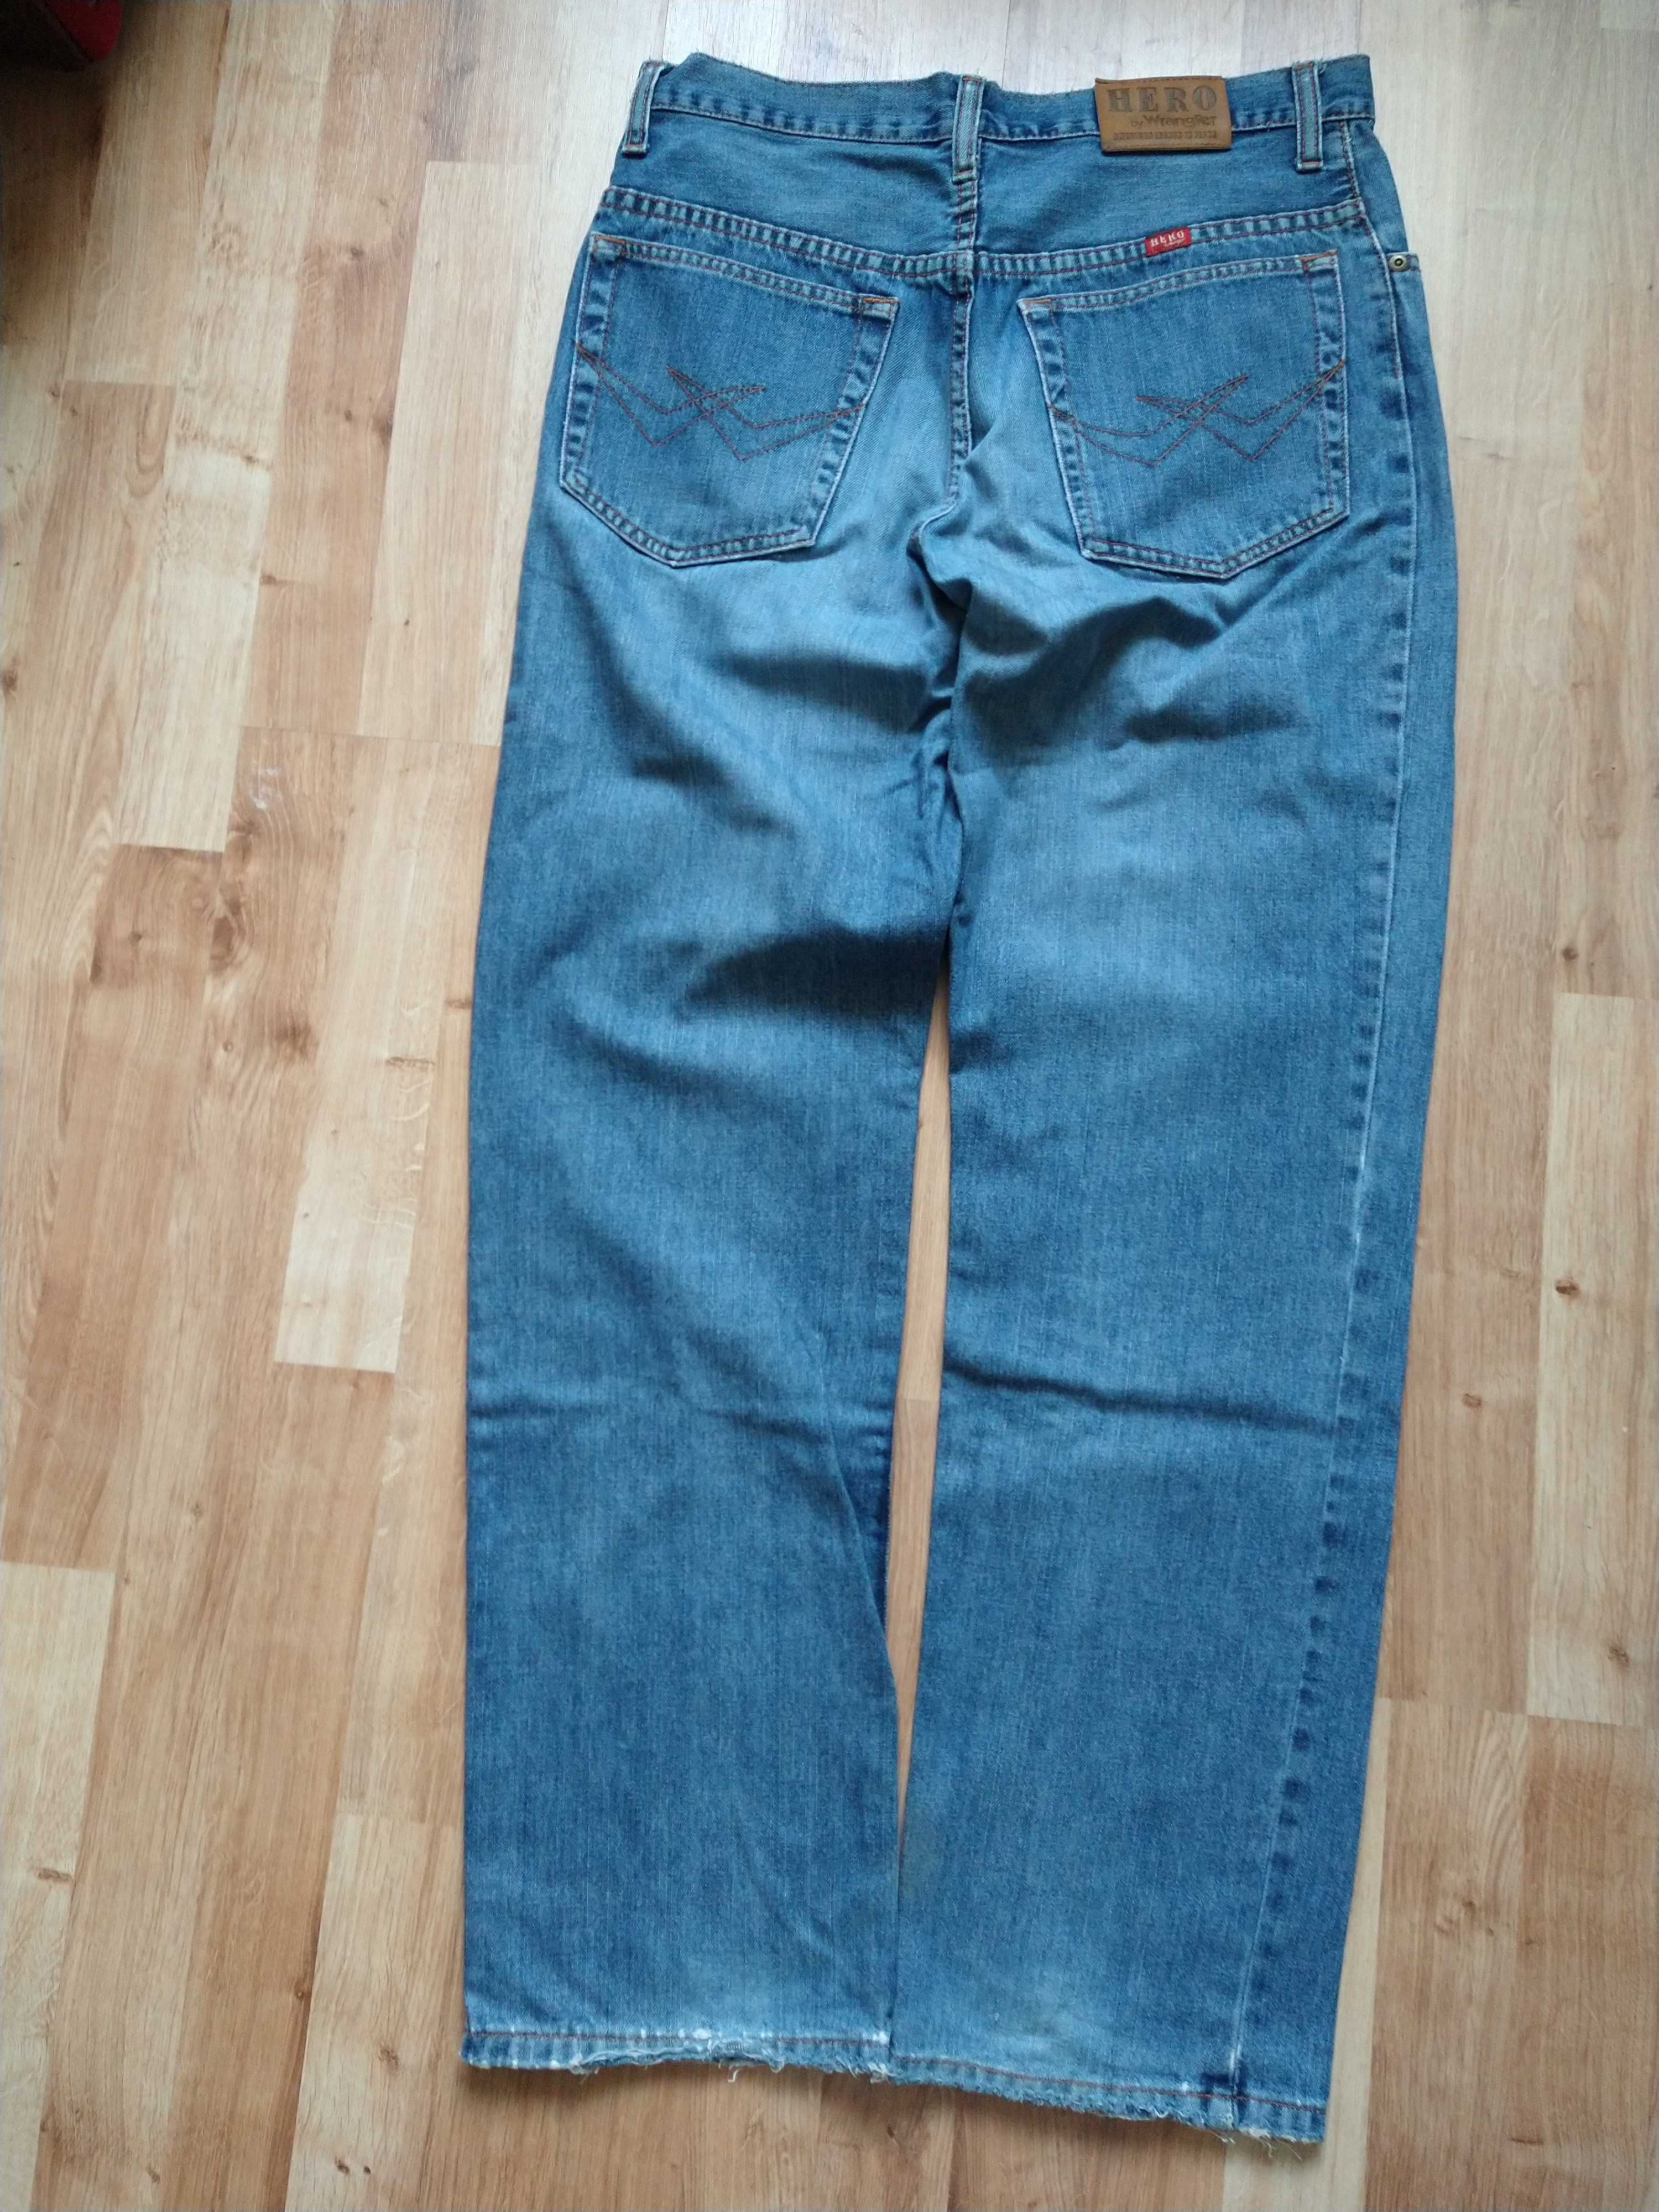 Spodnie Wrangler Hero Jeans. Używane. Męskie.